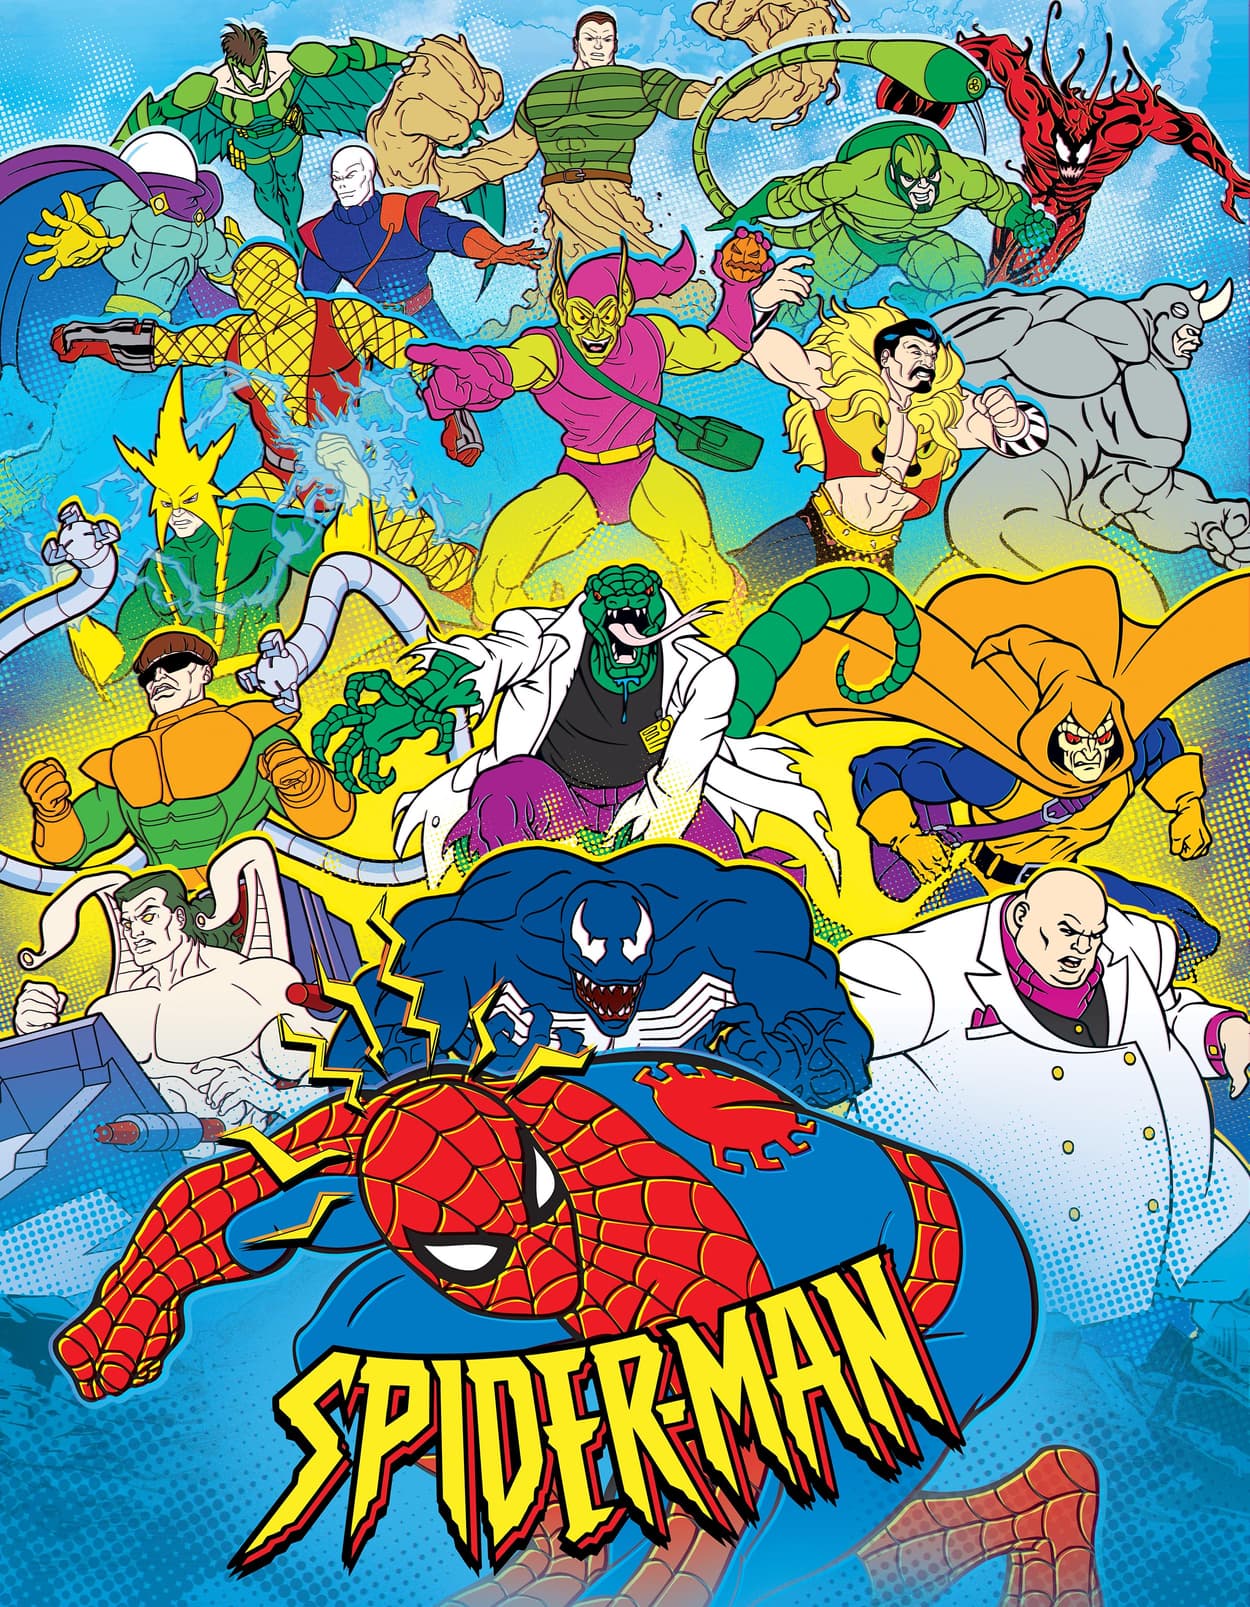 Spider-Man cartoon poster